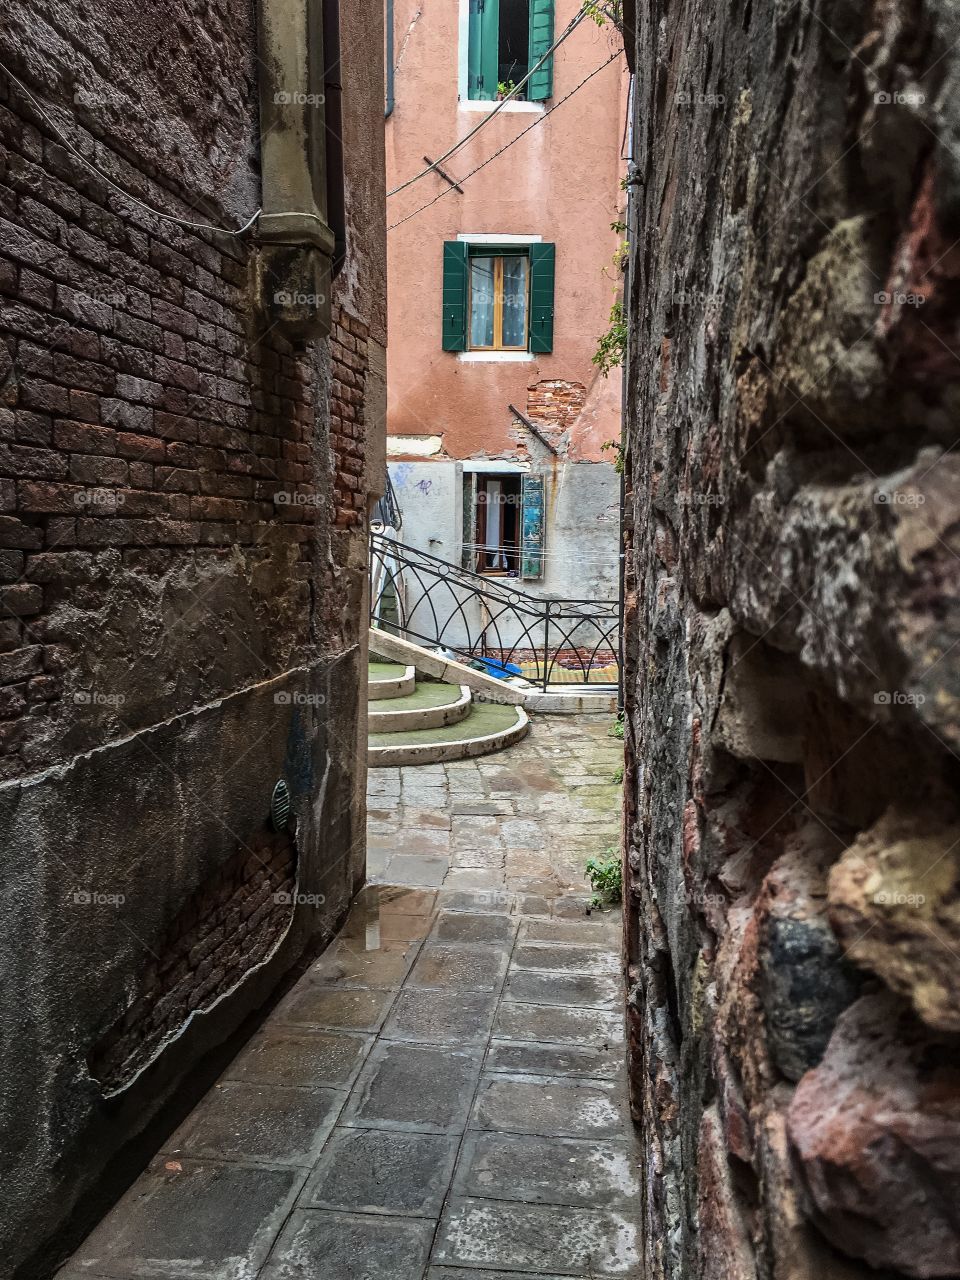 Narrow alley in old town in Venezia, Venice